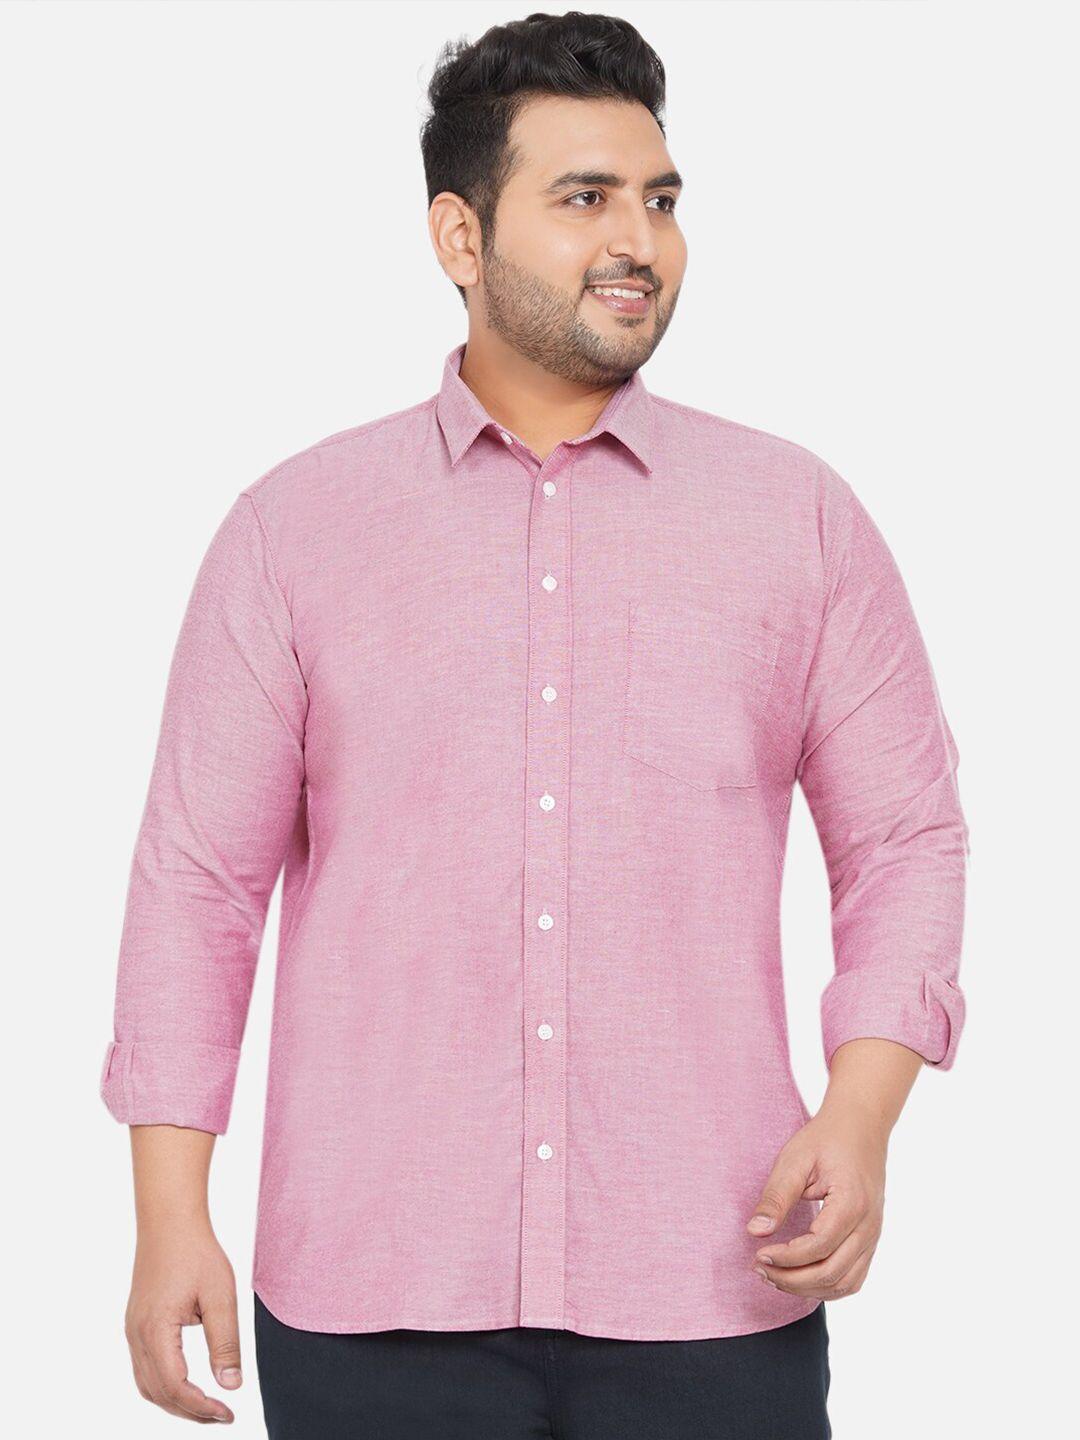 john pride men pink casual shirt